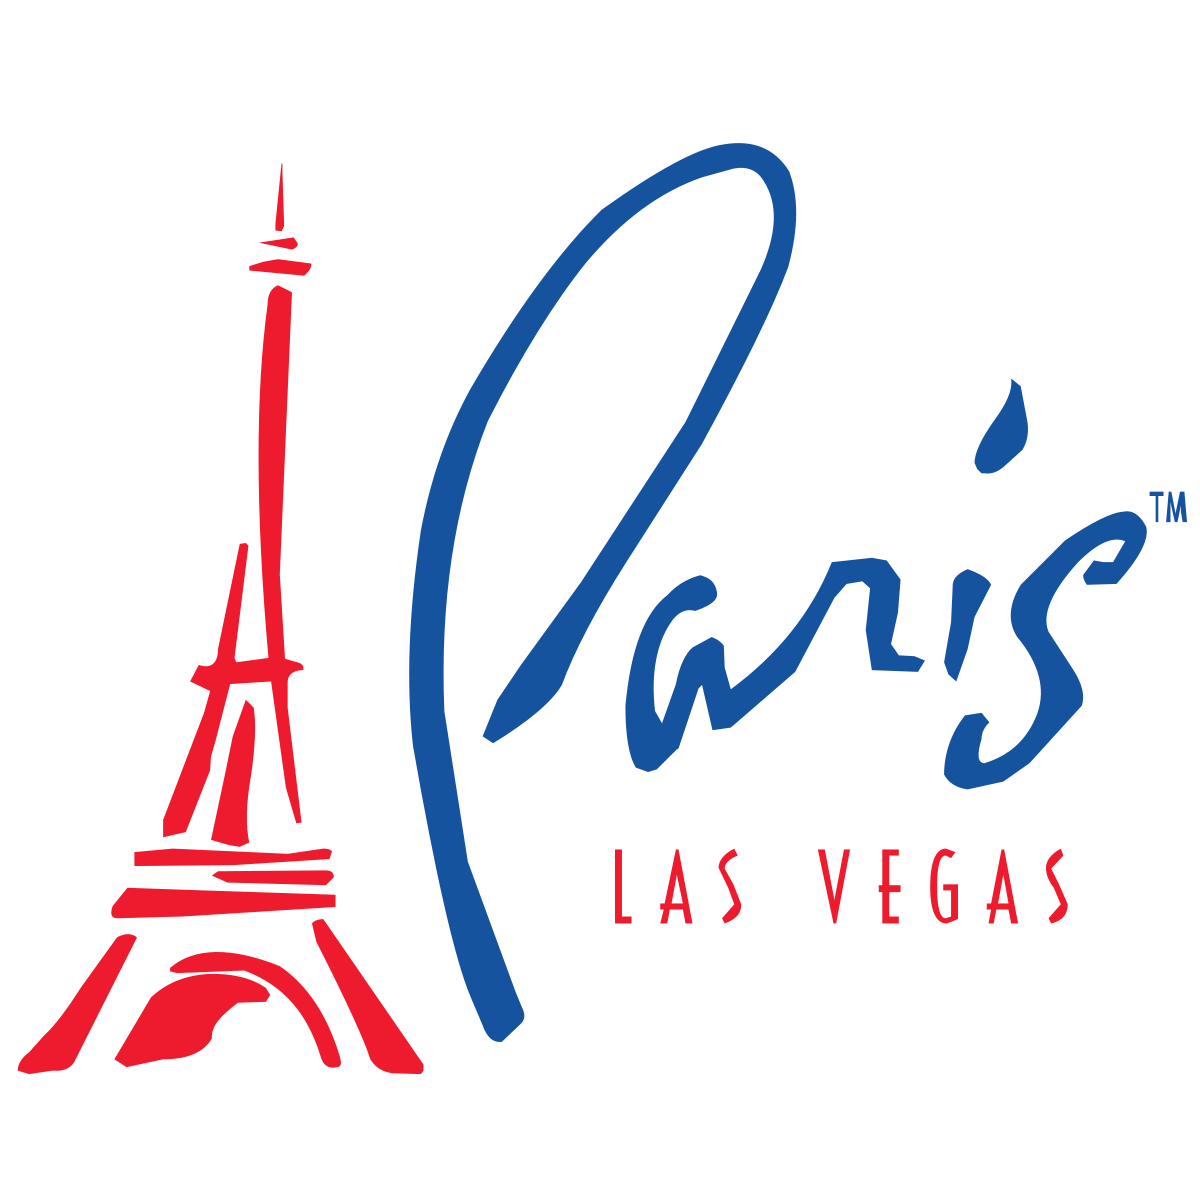 Paris Hotel Logo - Paris Las Vegas